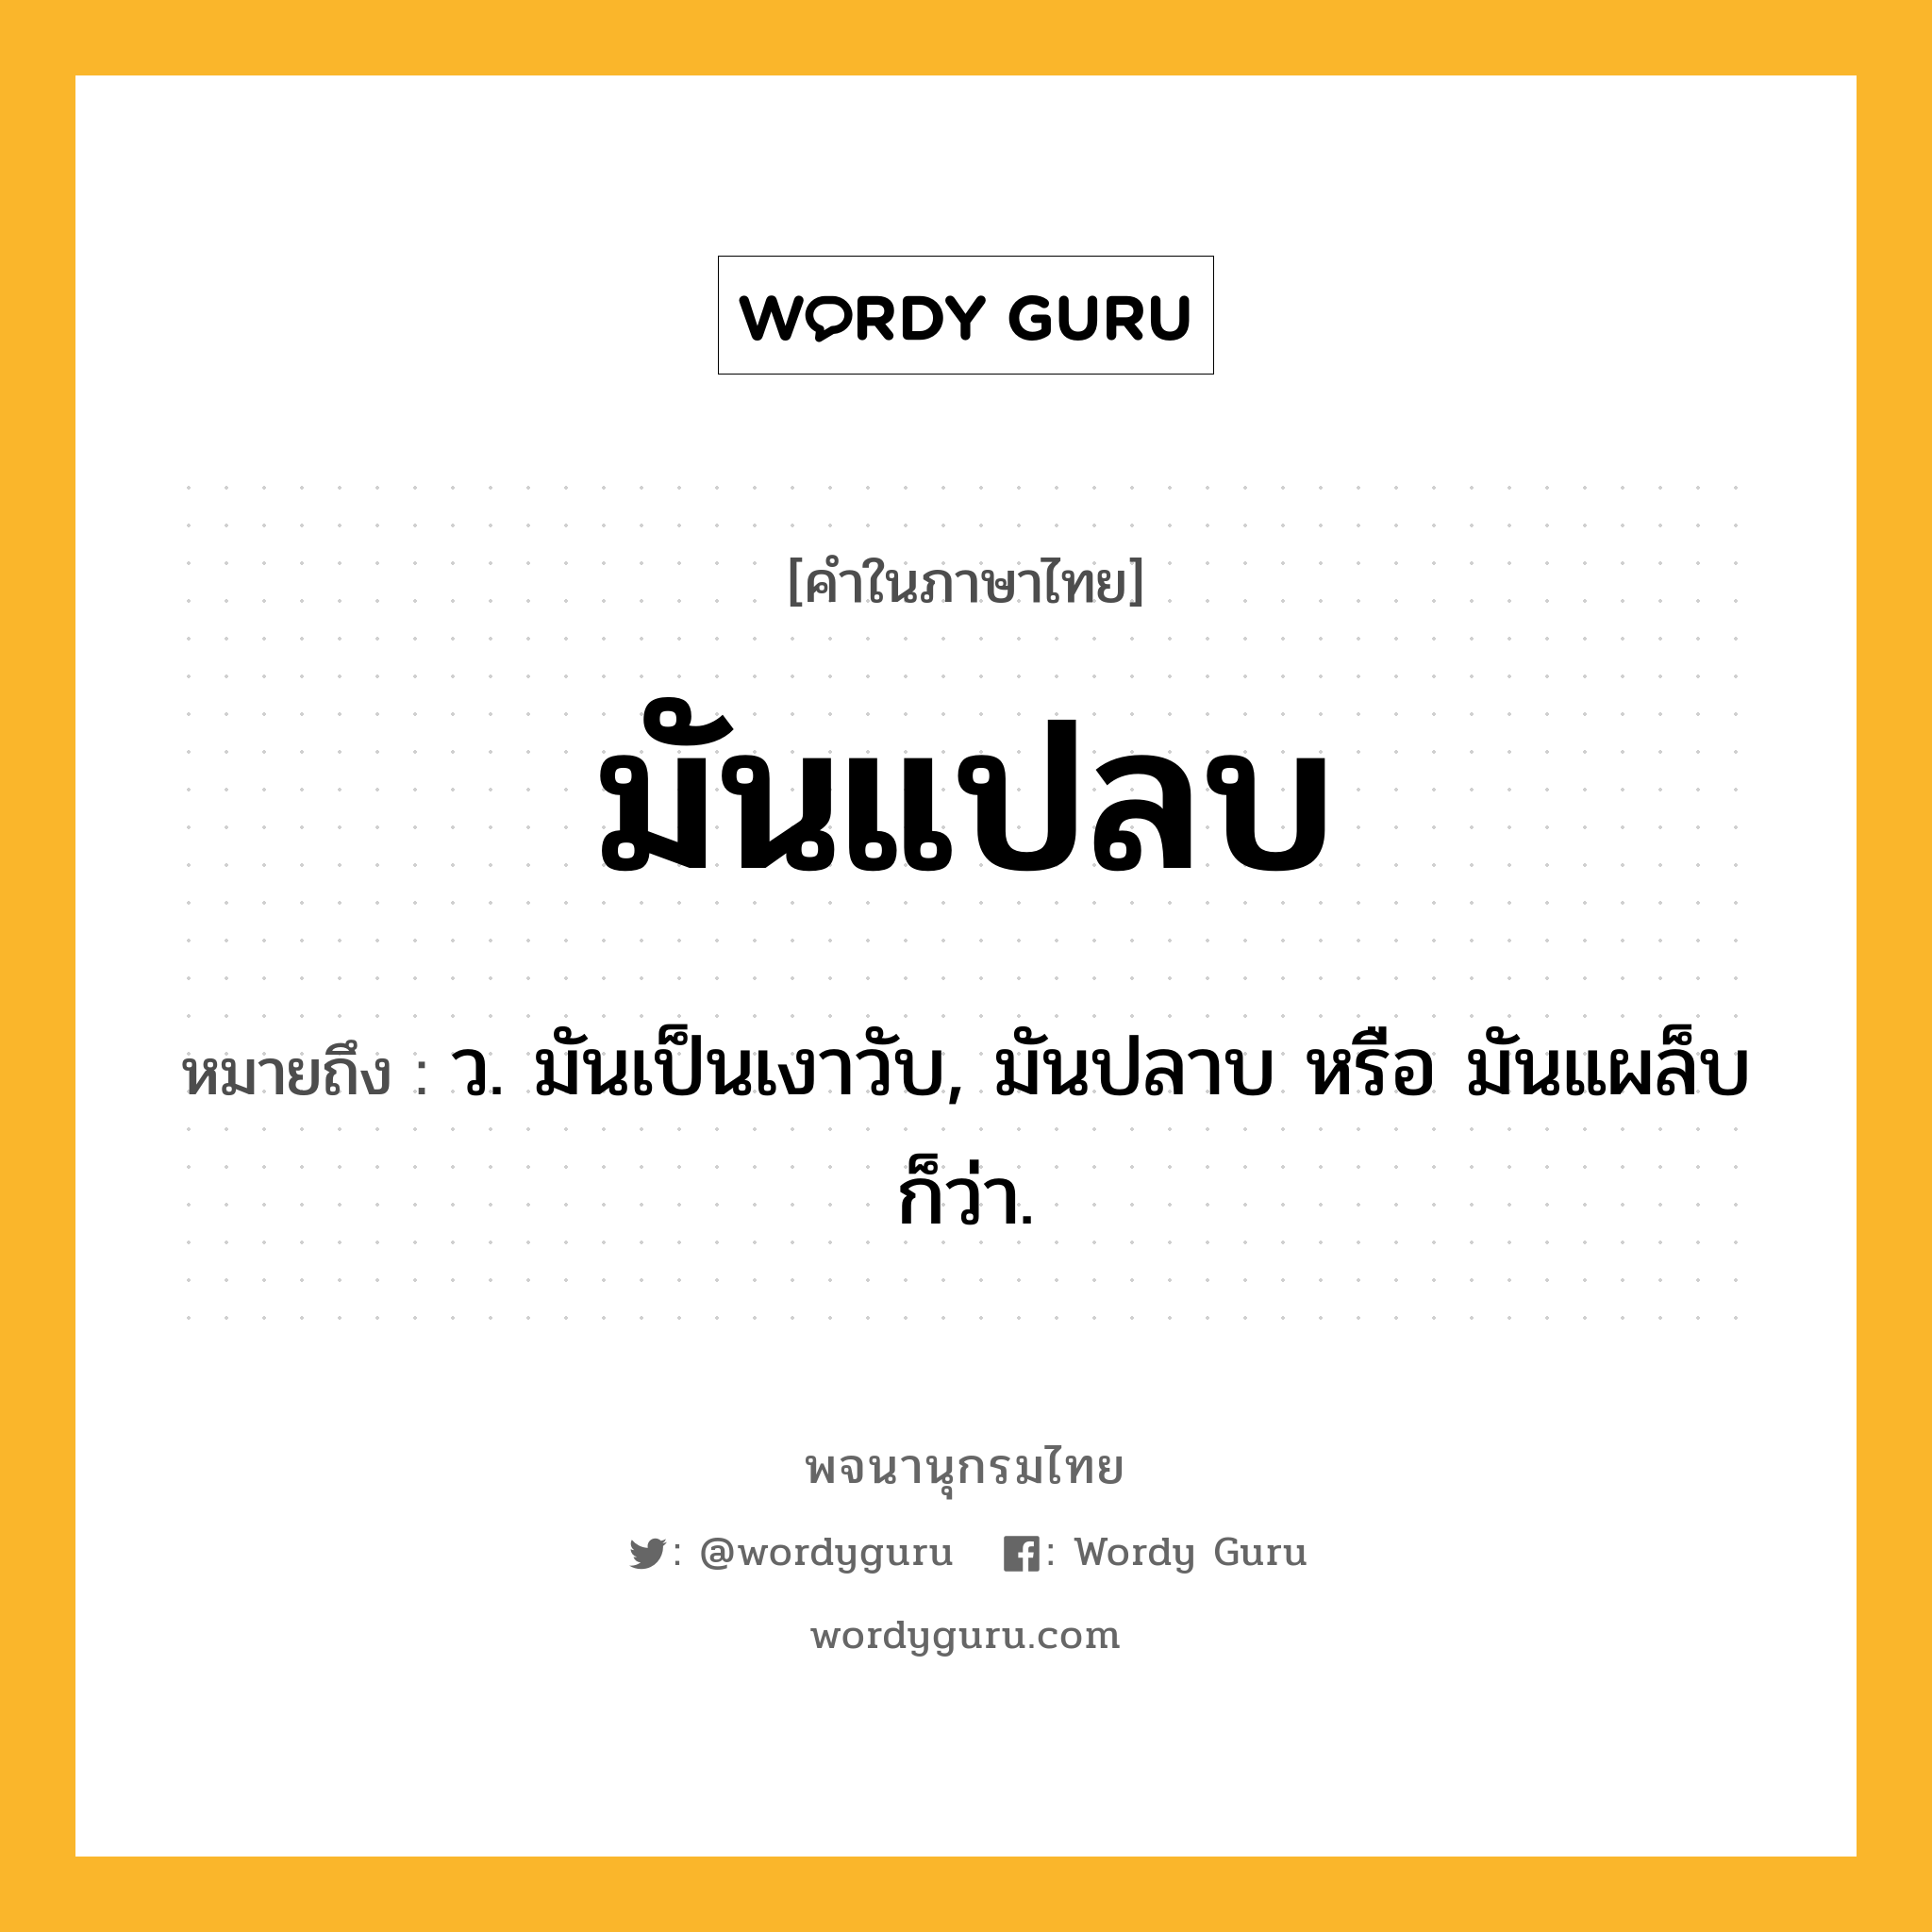 มันแปลบ หมายถึงอะไร?, คำในภาษาไทย มันแปลบ หมายถึง ว. มันเป็นเงาวับ, มันปลาบ หรือ มันแผล็บ ก็ว่า.